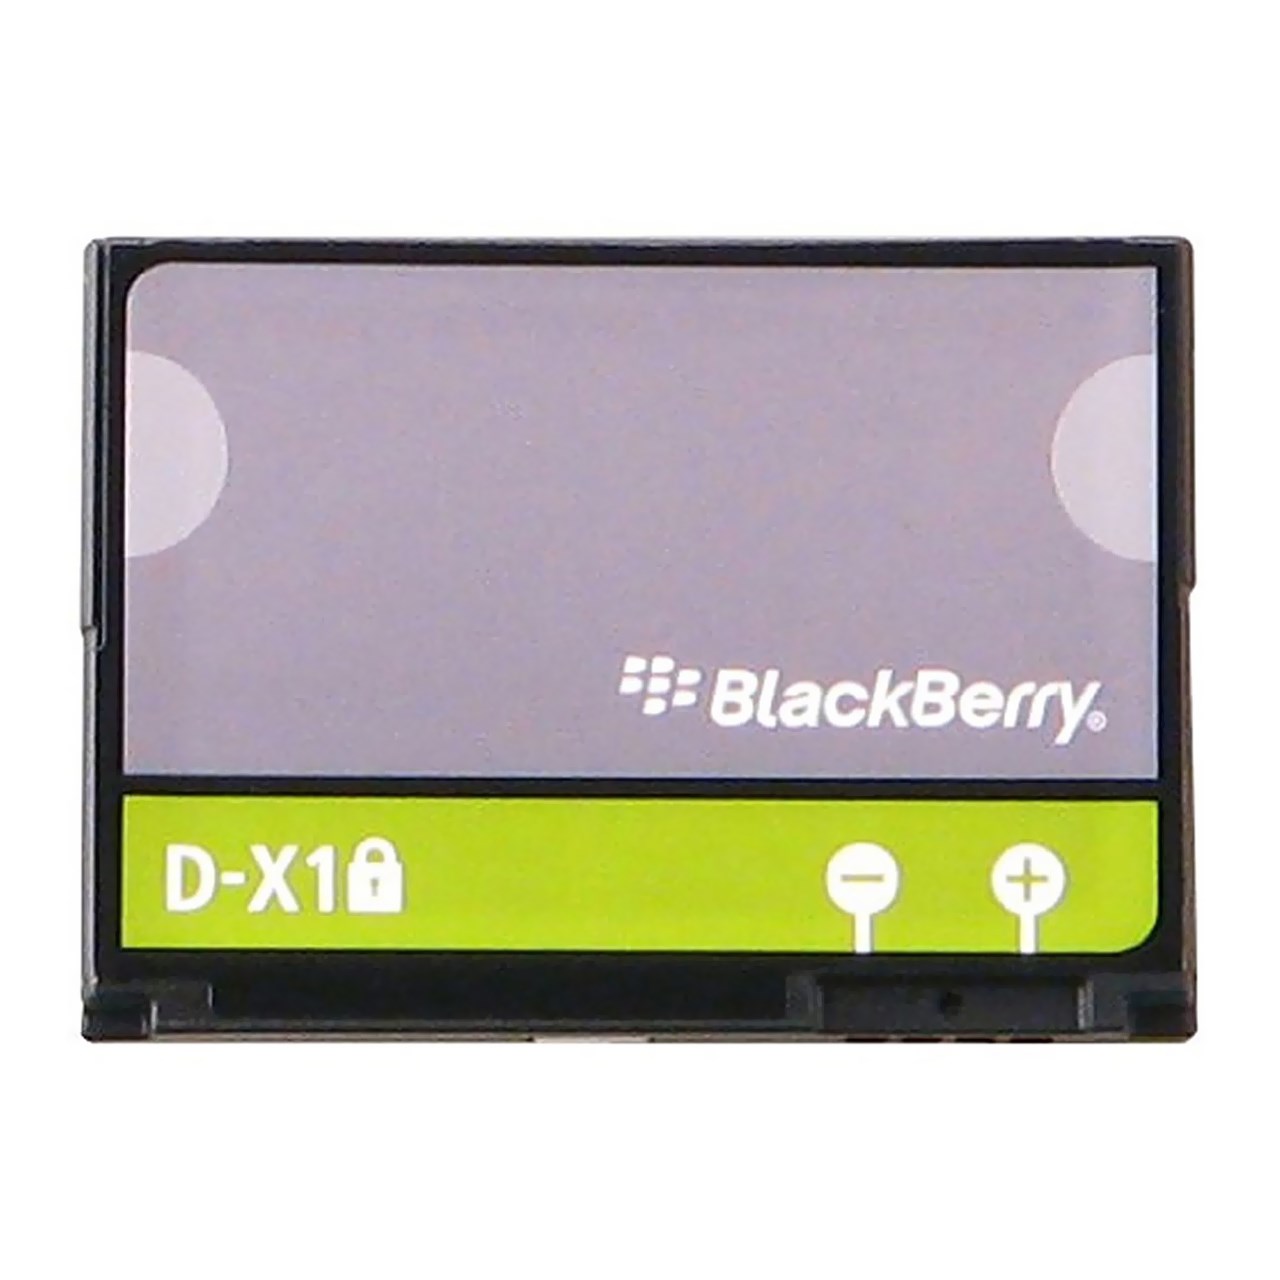 باتری موبایل مدل D-X1 با ظرفیت 1380mAh مناسب برای گوشی موبایل بلک بری Storm 9530